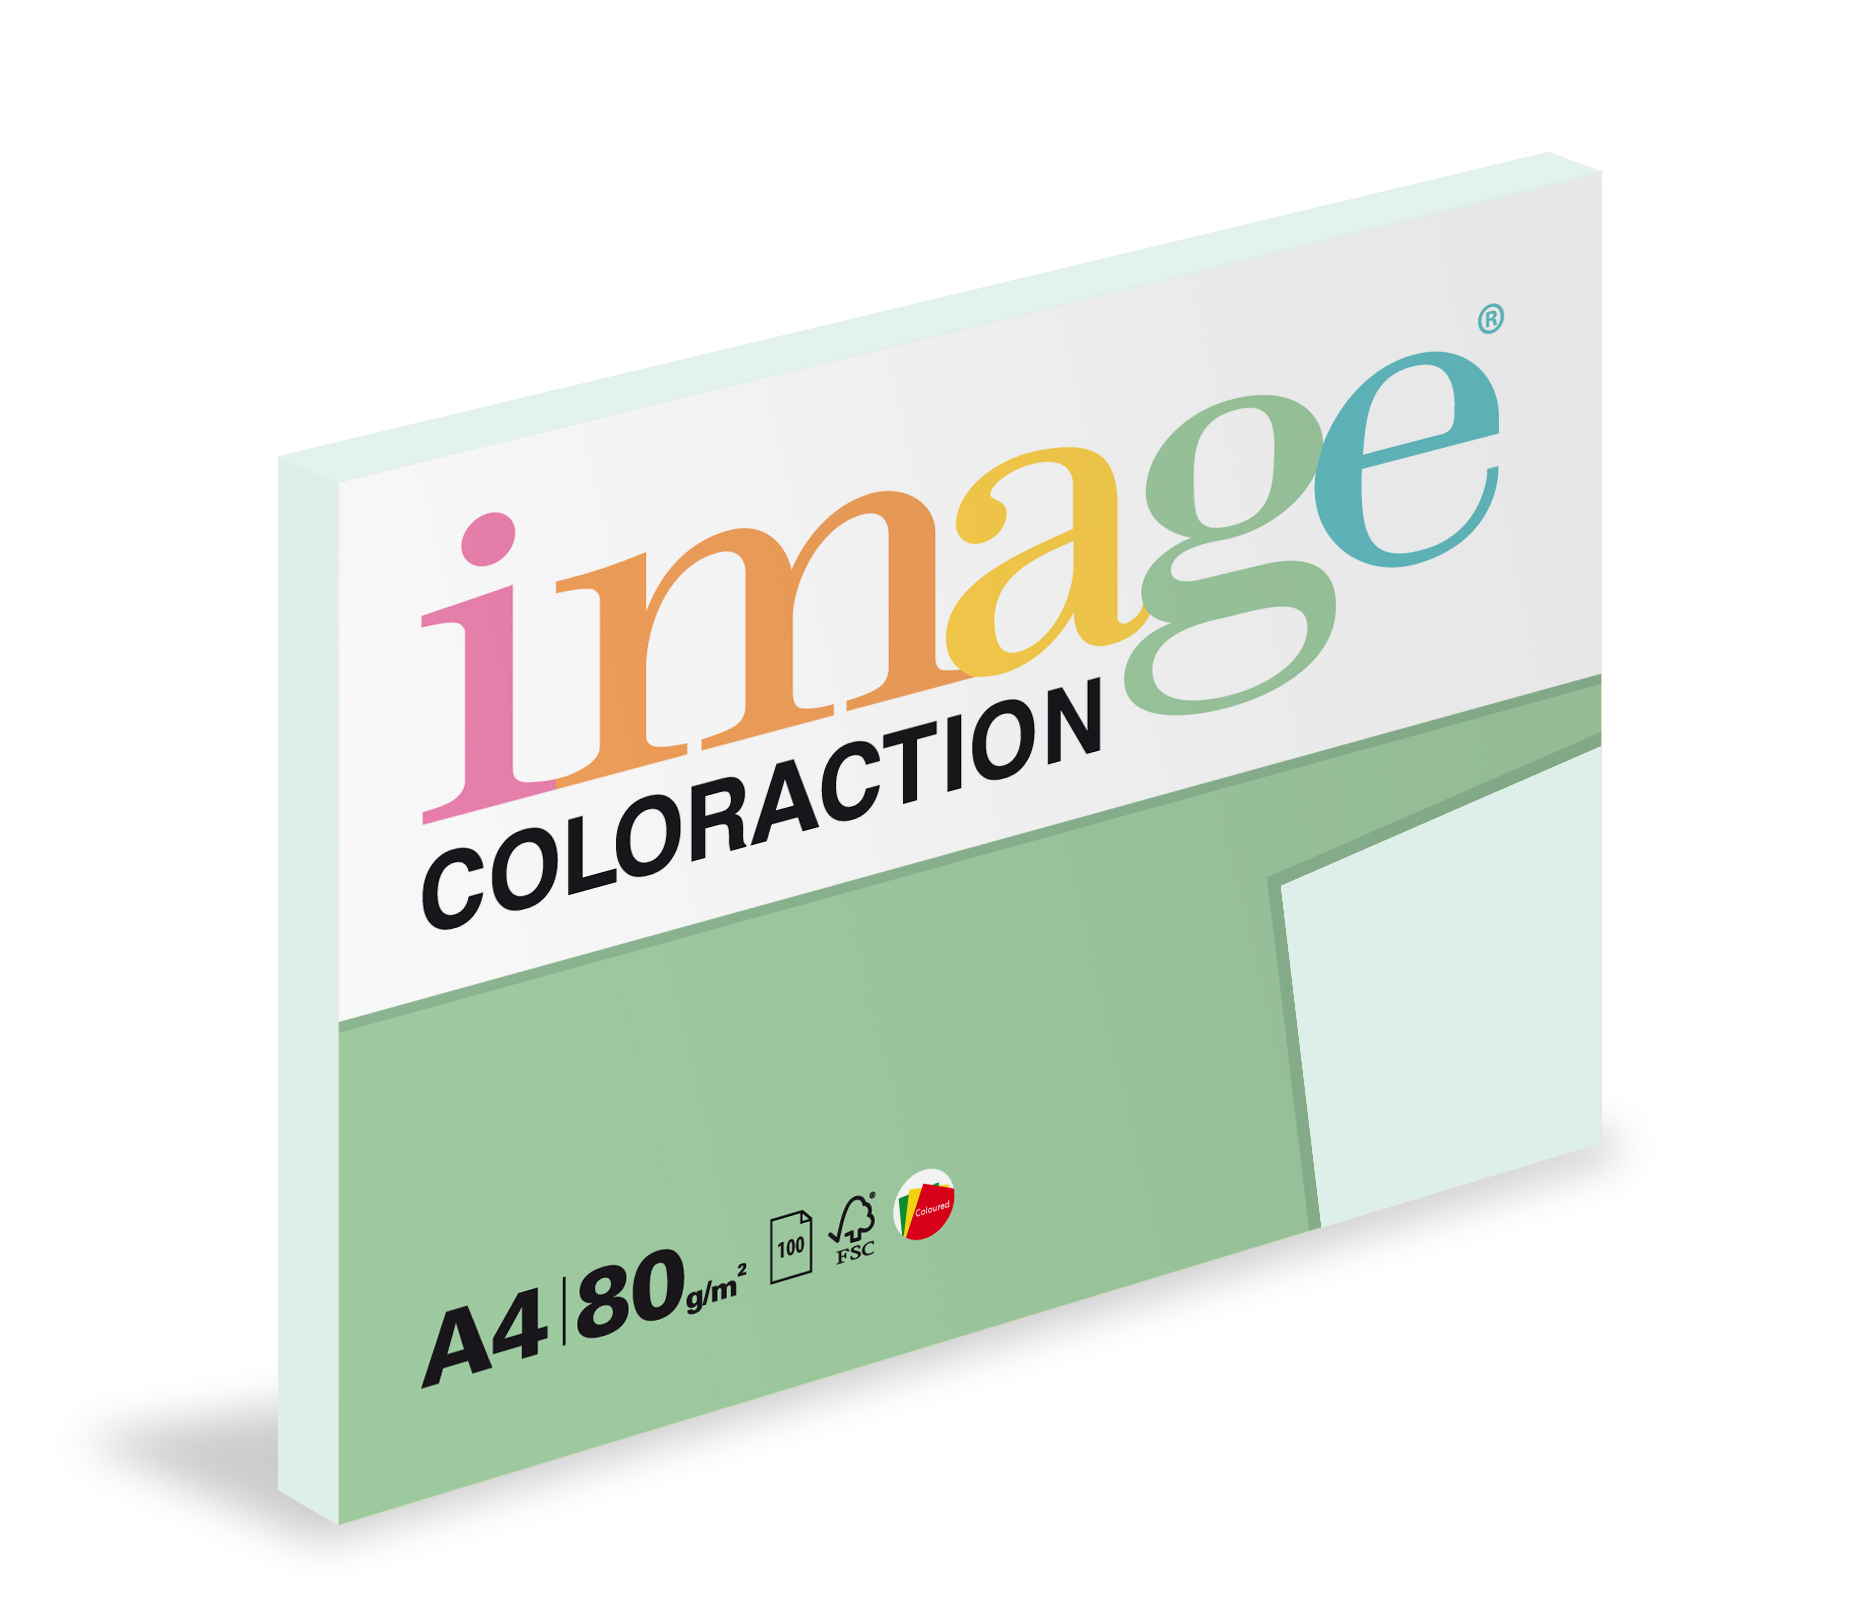 Papír kopírovací Coloraction A4 80g/ 100 listů modrá světlá pastelová